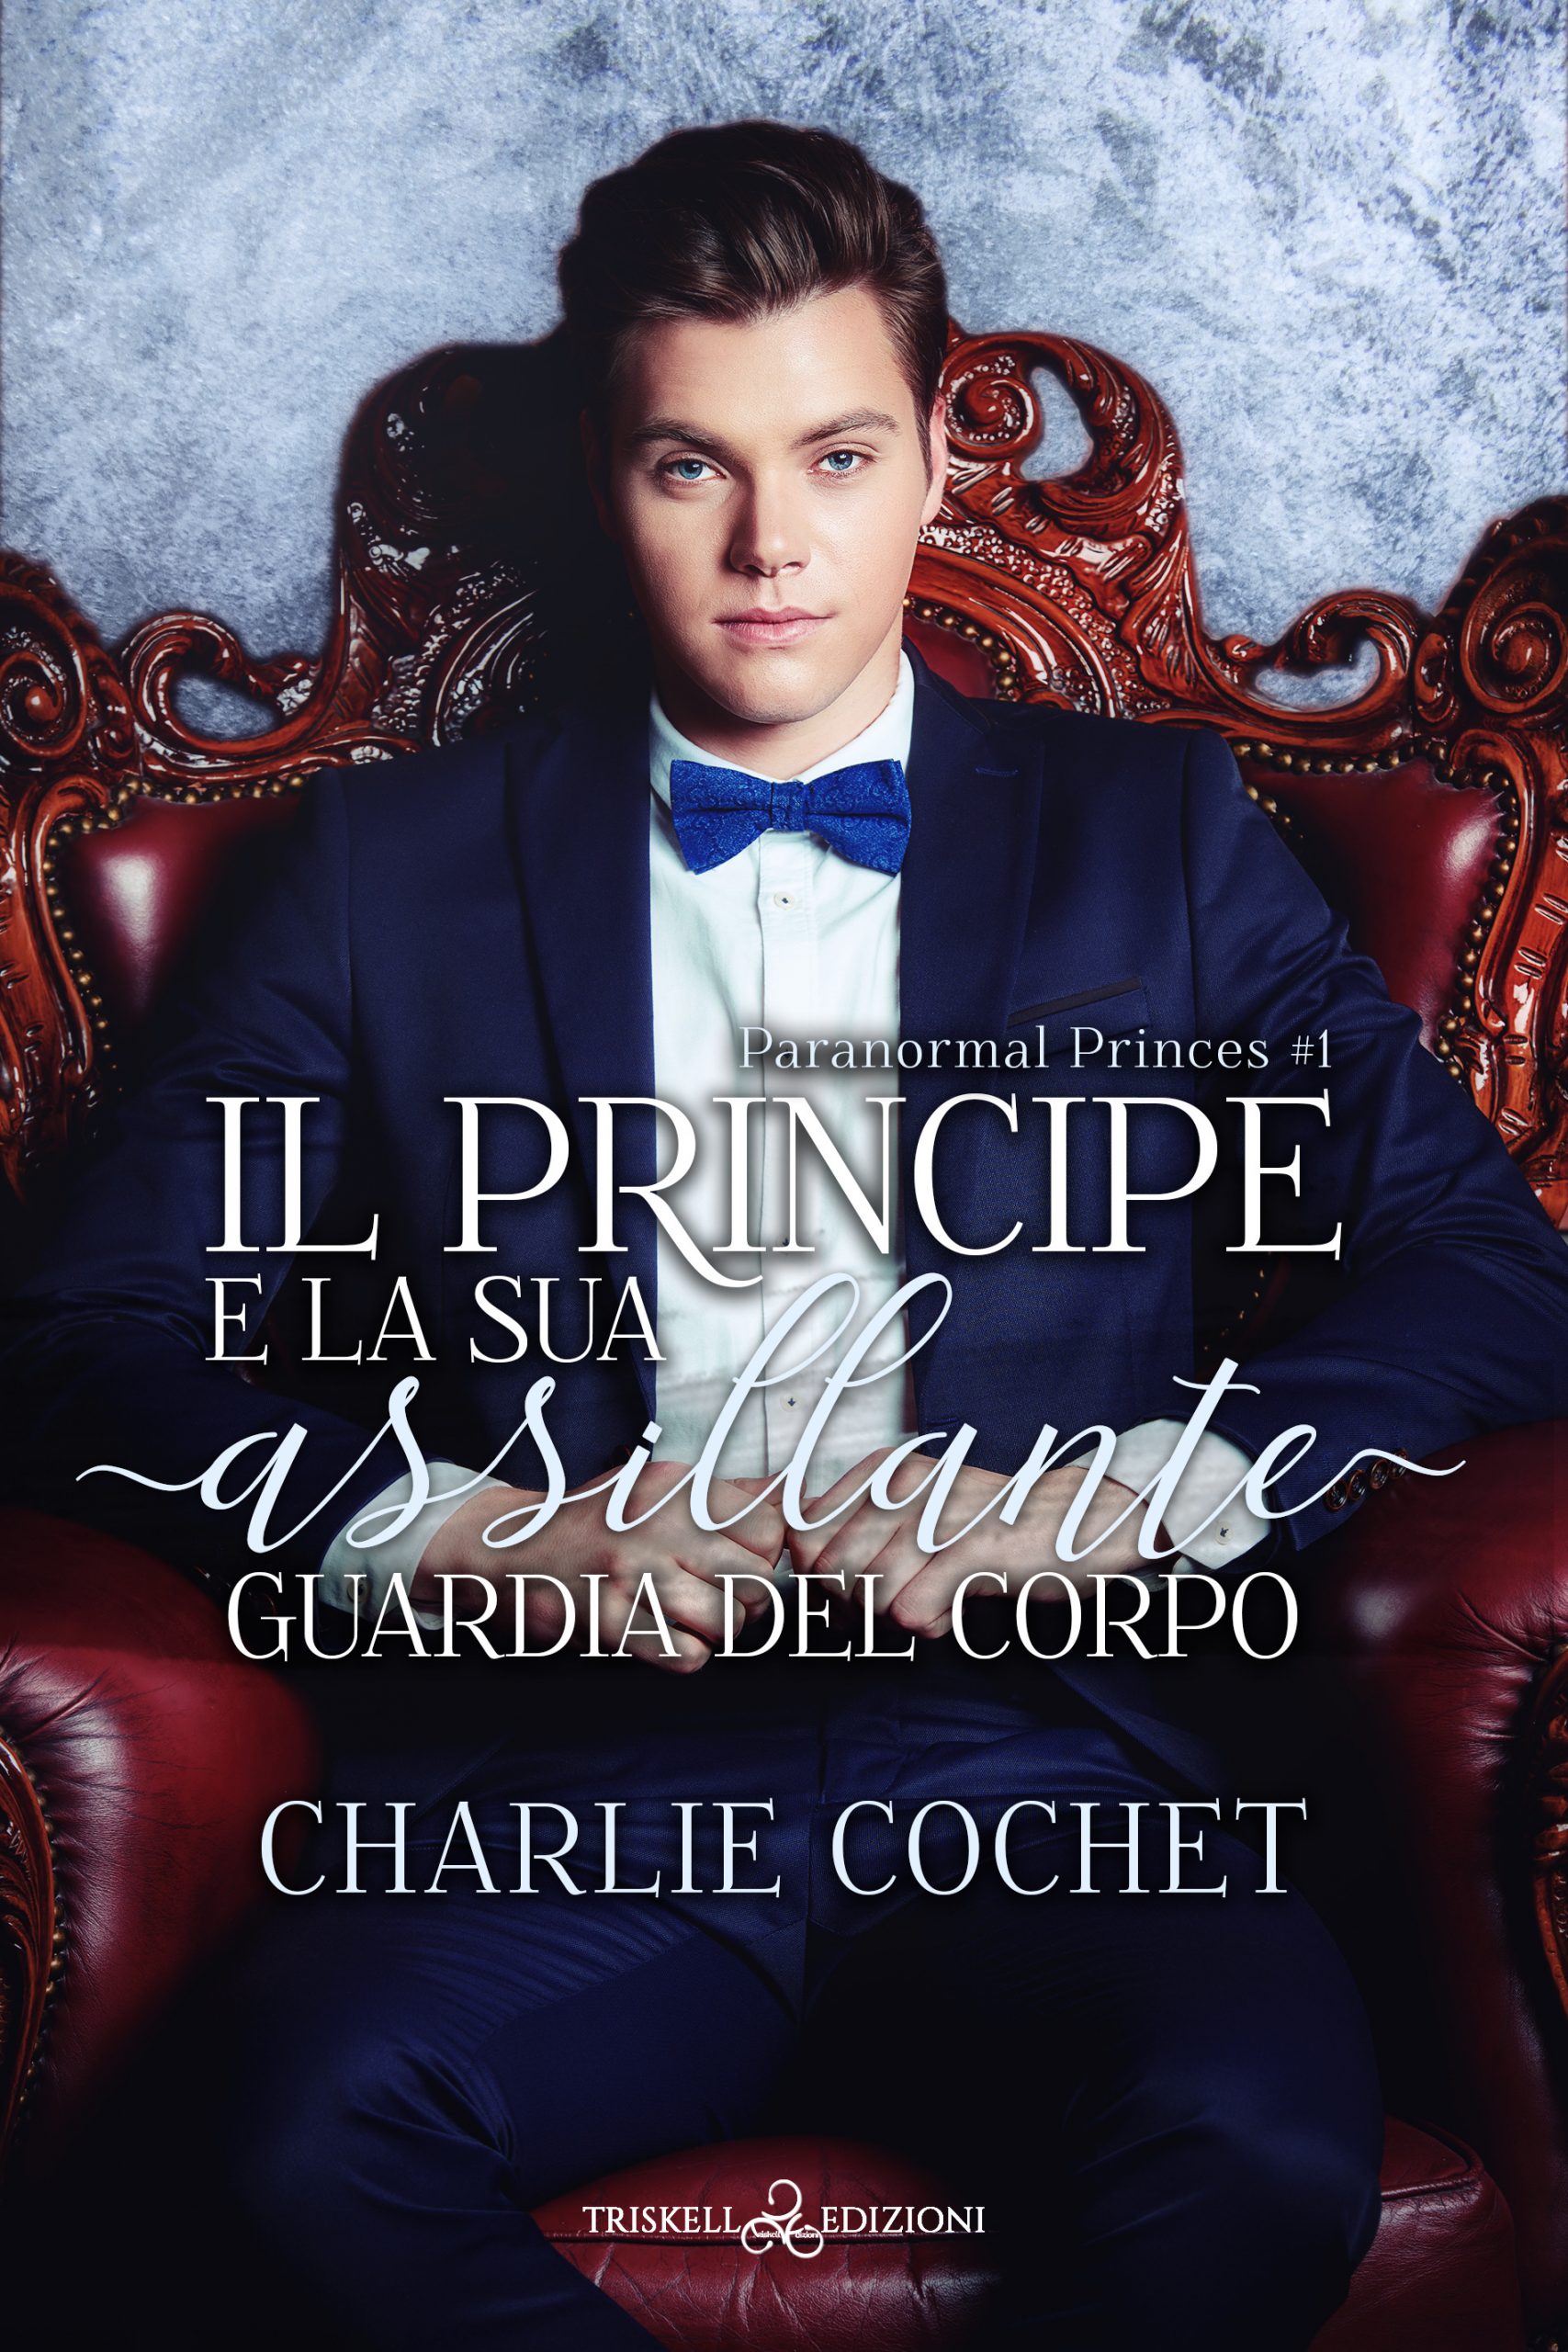 Recensione “Il principe e la sua assillante guardia del corpo” – serie Paranormal Princes di Charlie Cochet